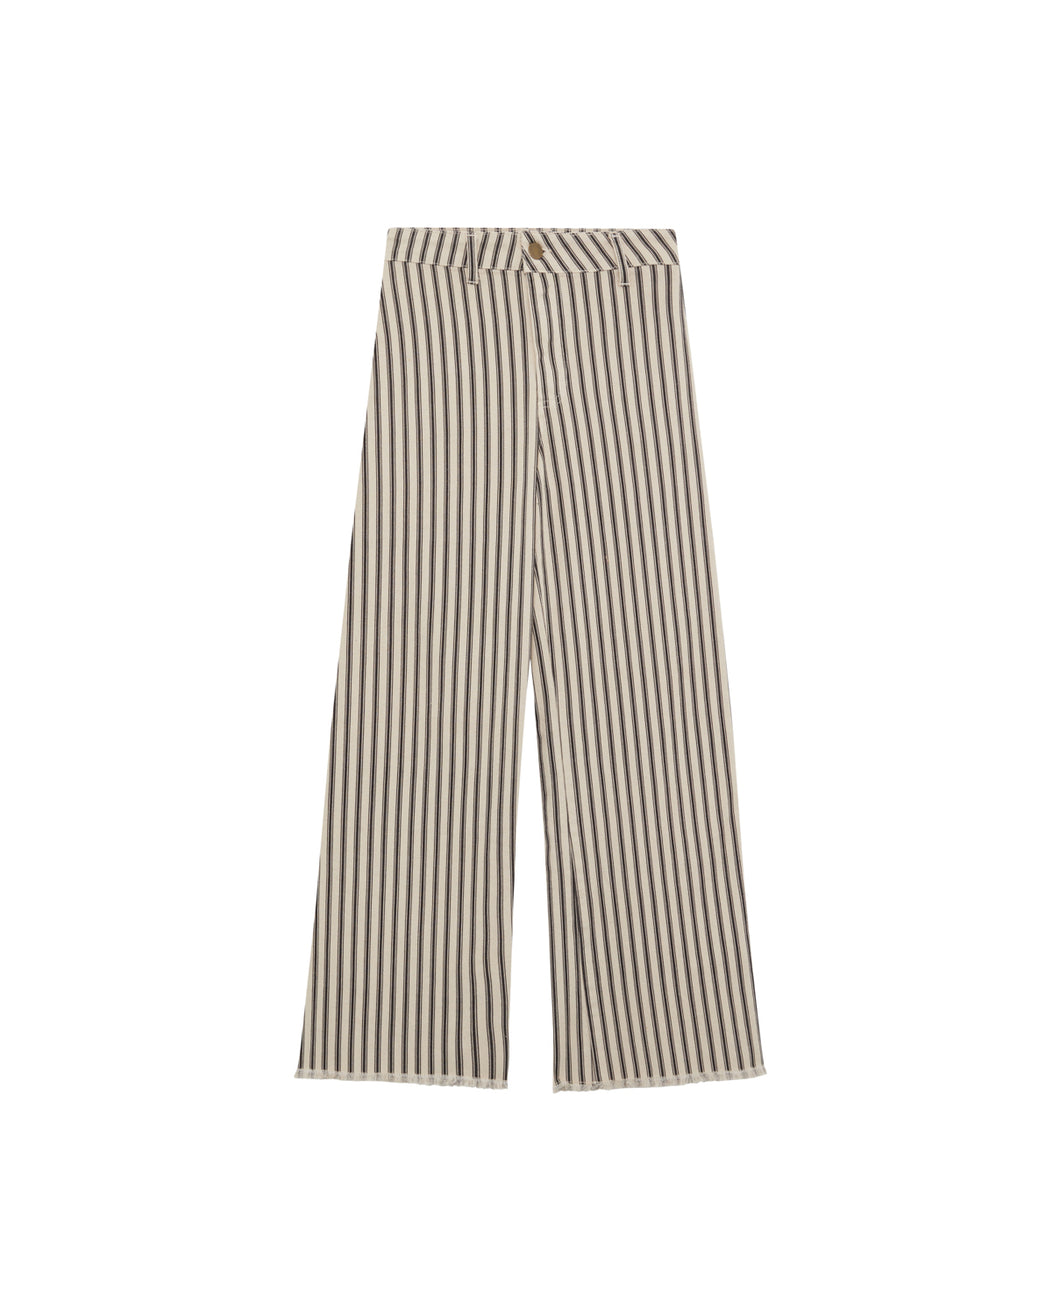 Maison Hotel Twiggy Jeans - Chaplin Stripes